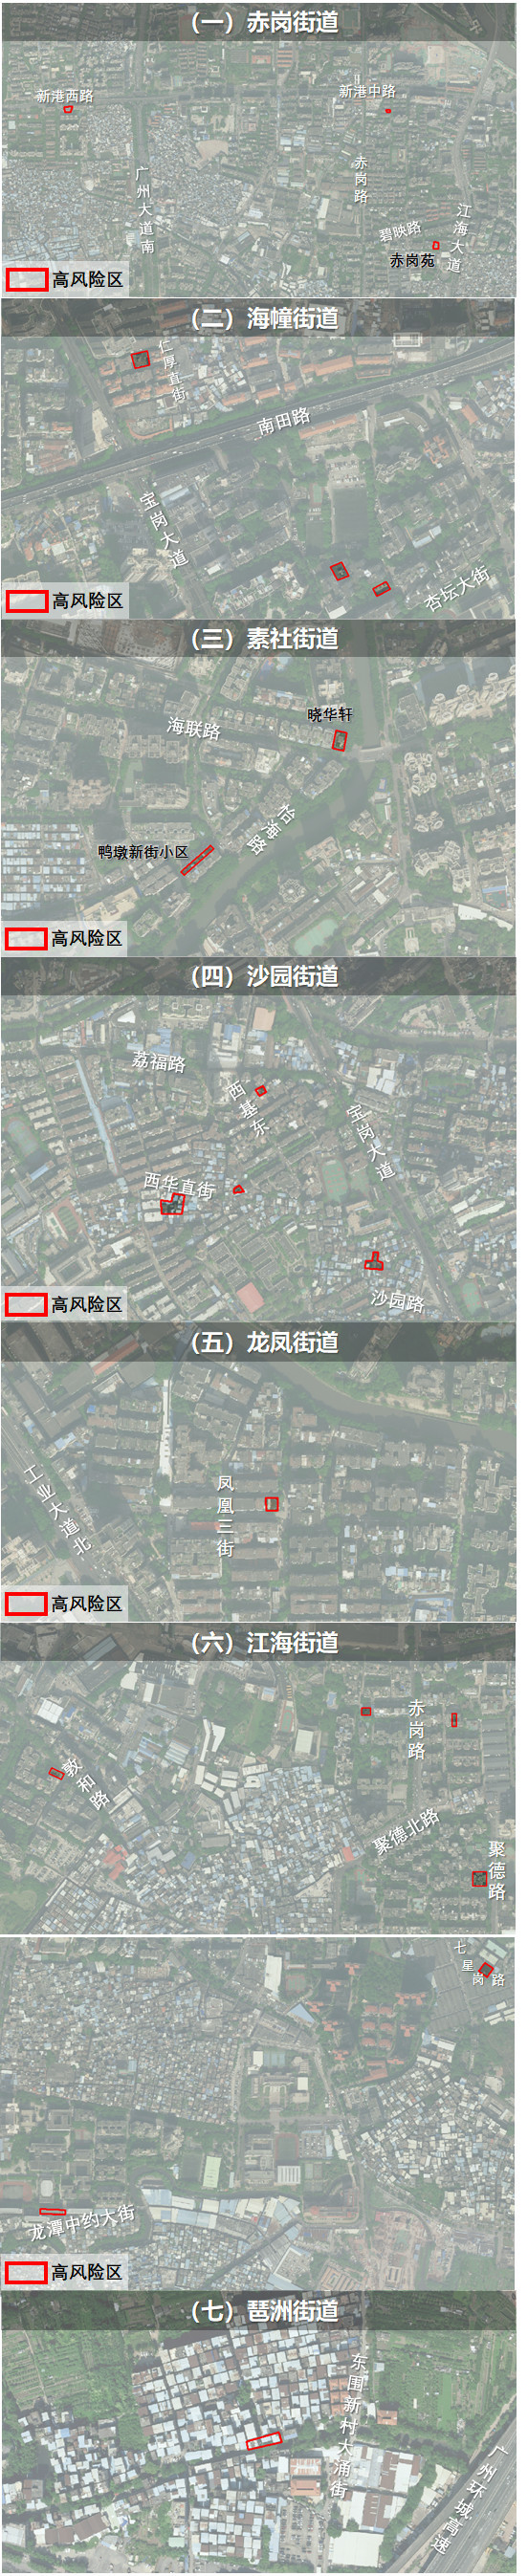 广州海珠区七街道划定高风险区 解除江海街道部分区域临时管控